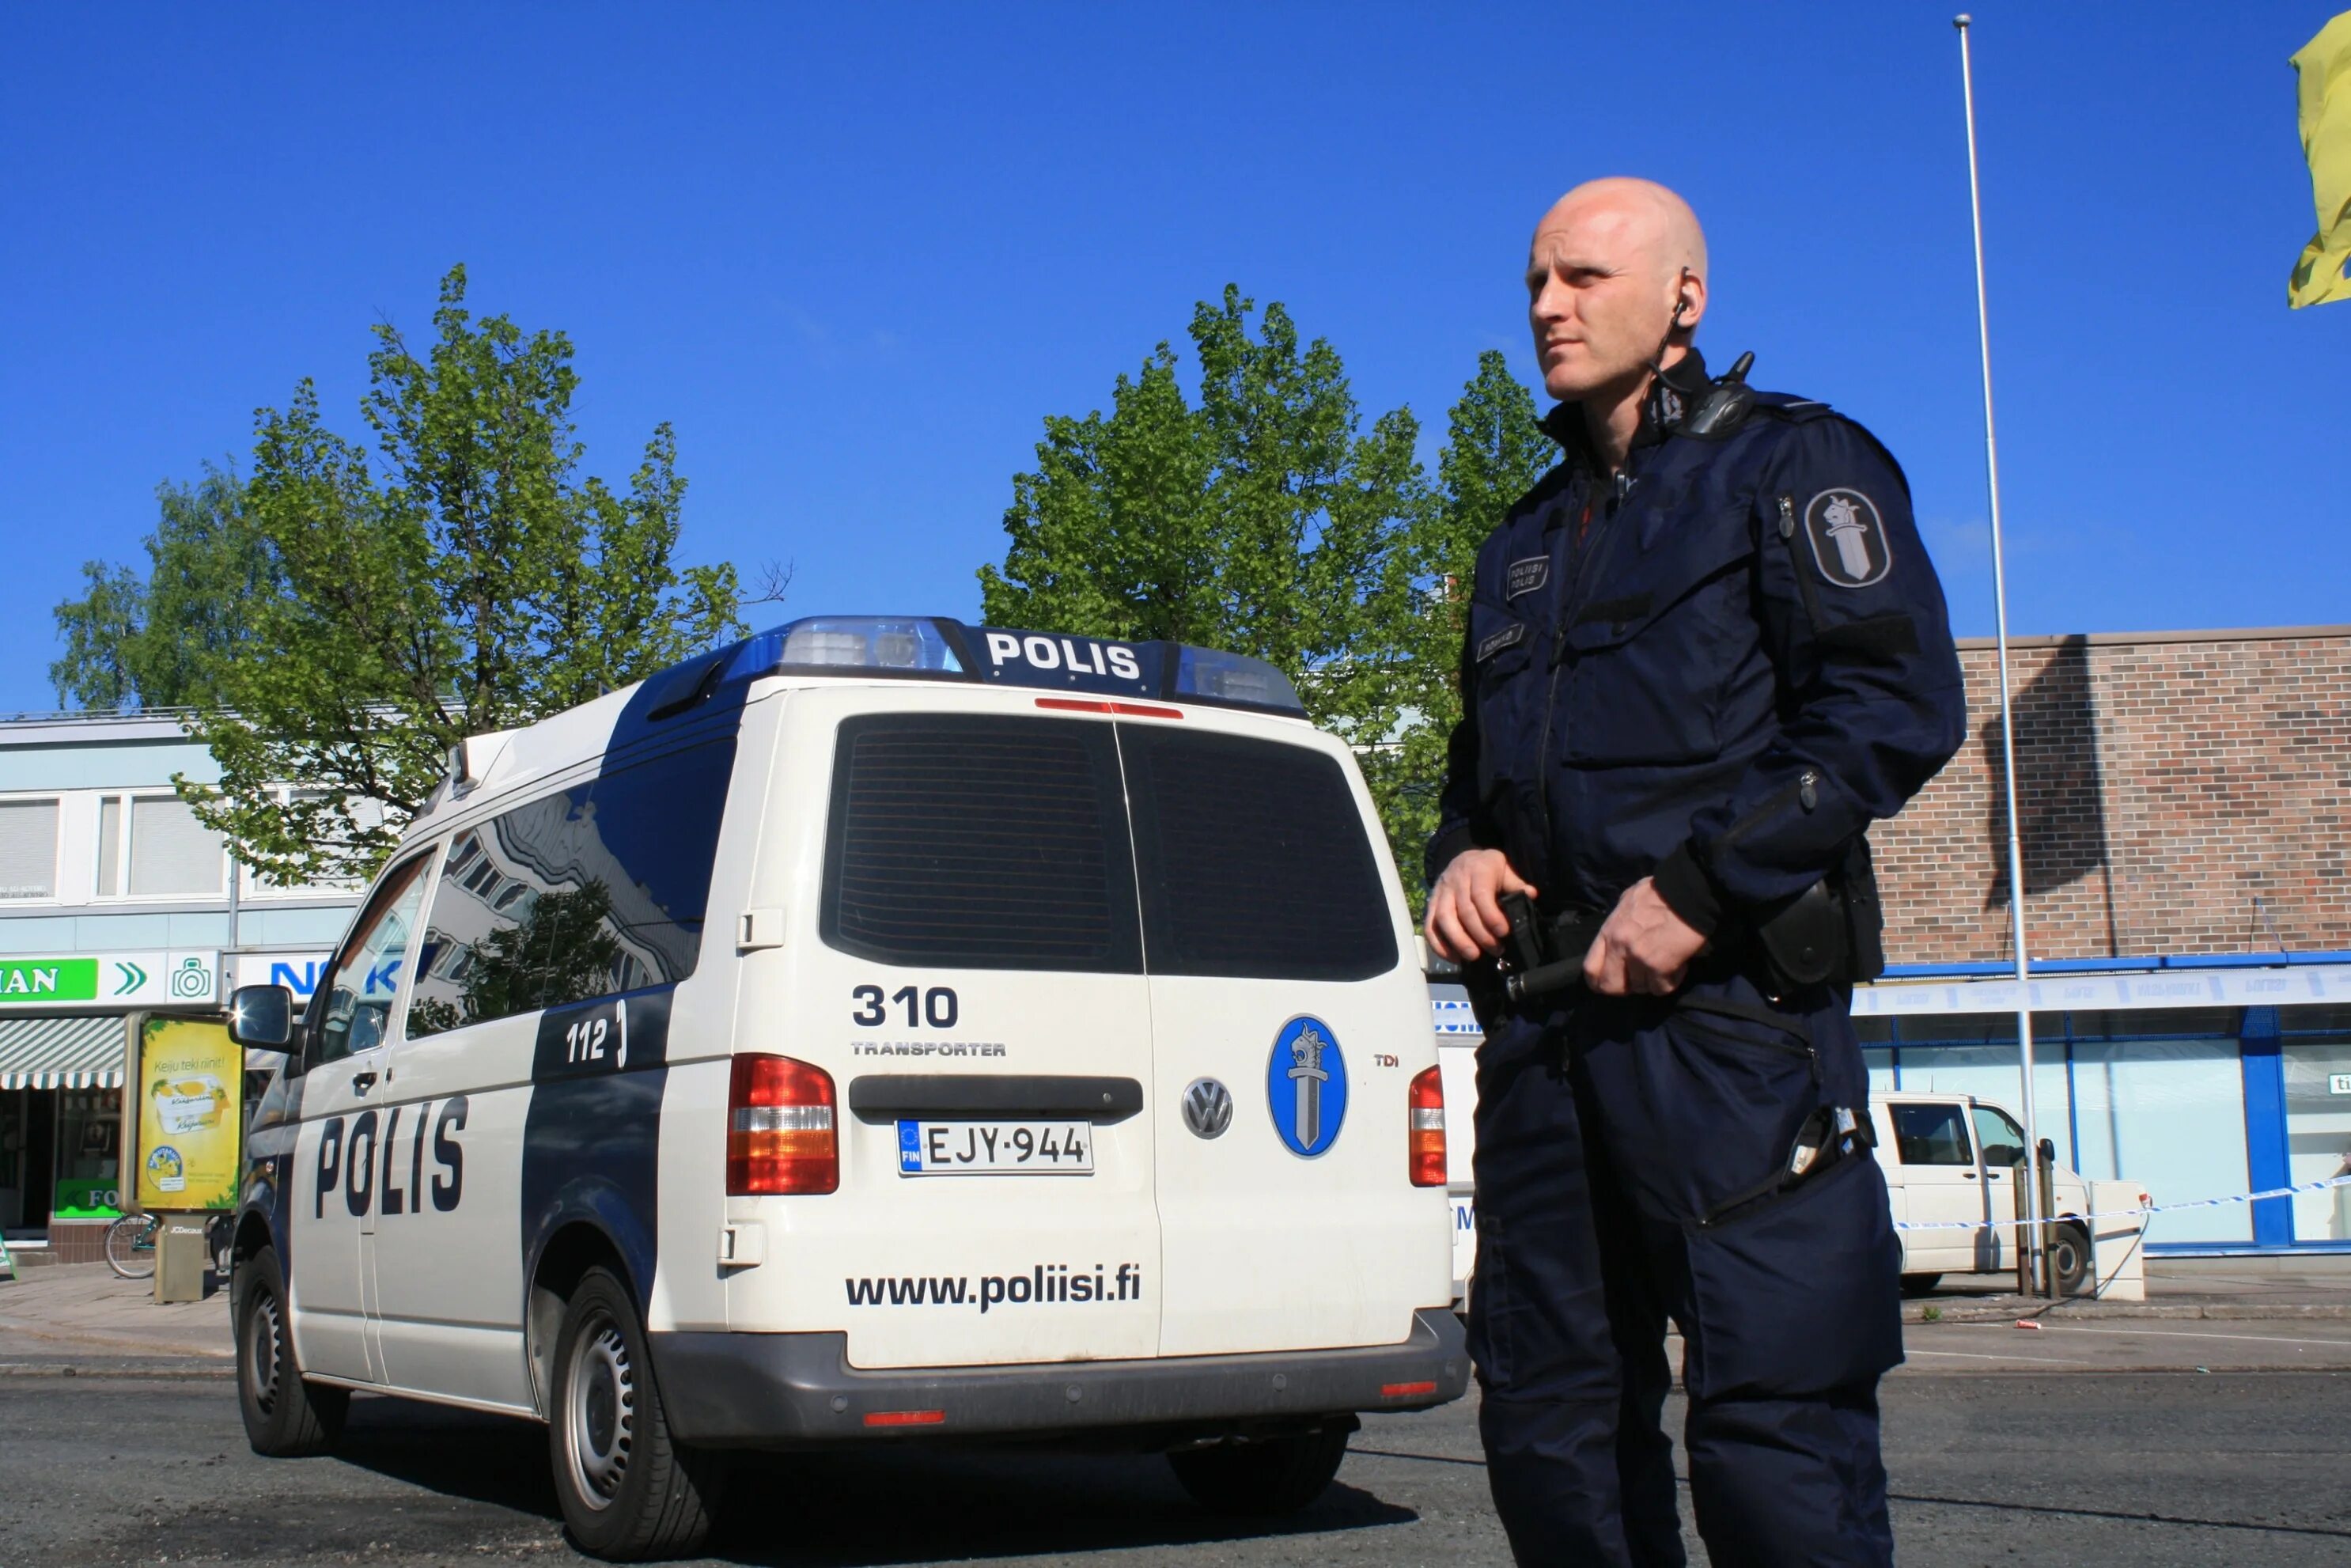 Безопасность финляндии. Полицай в Финляндии. Форма полиции Финляндии. Полиция Финляндии. Финская полиция.